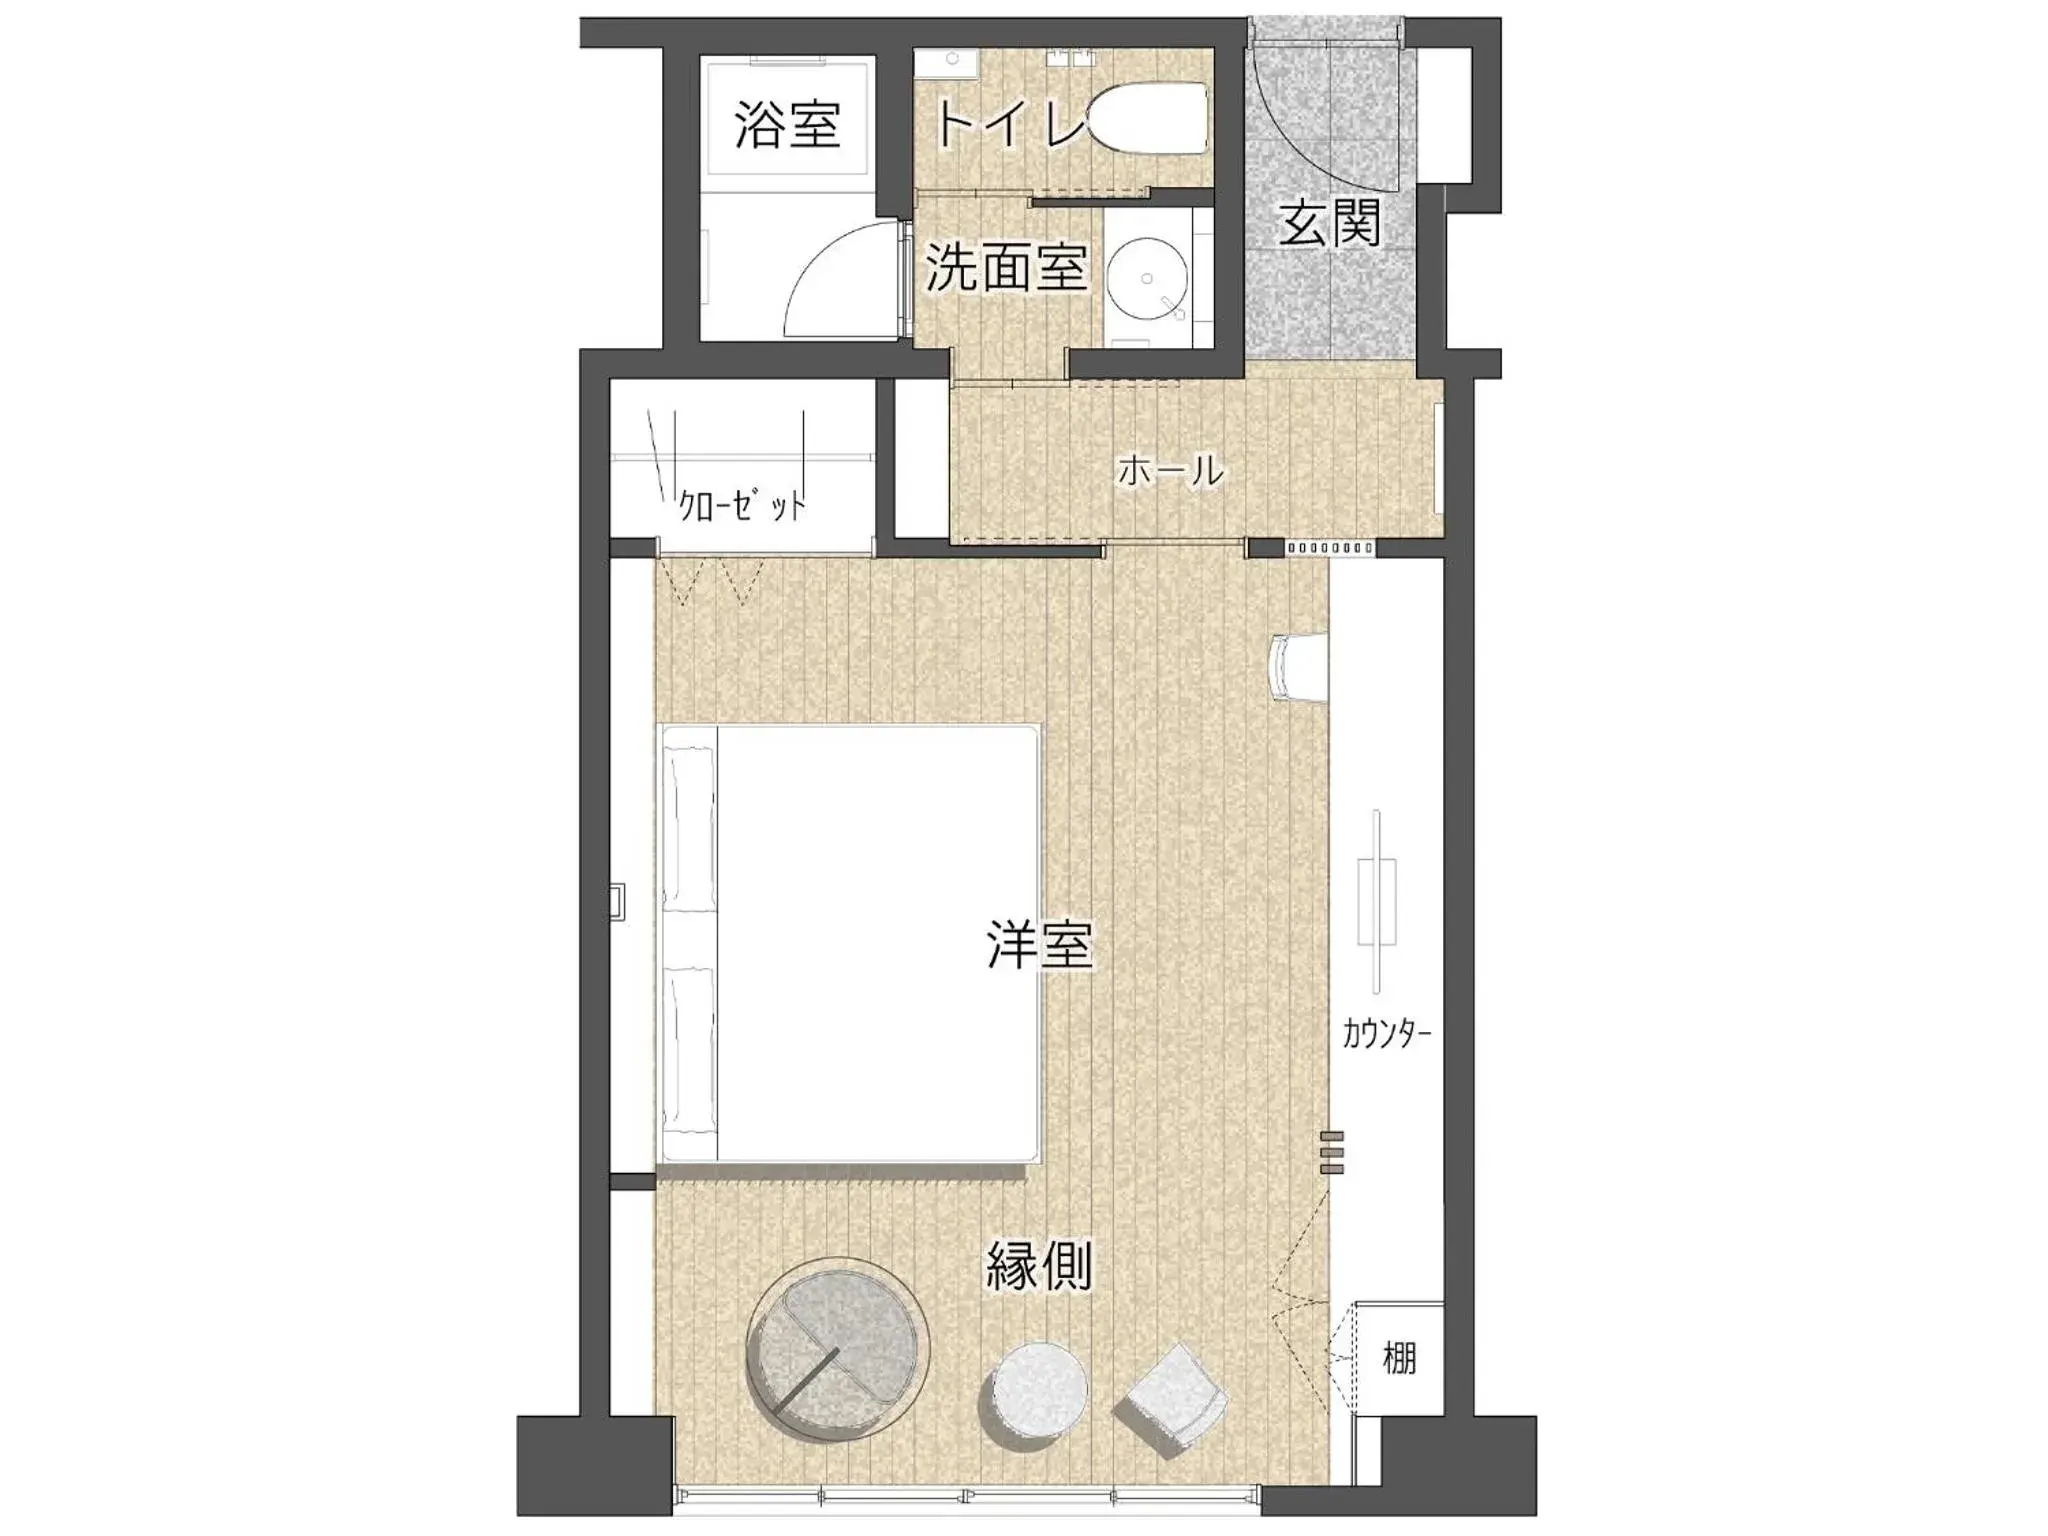 Floor Plan in Jyoseikan